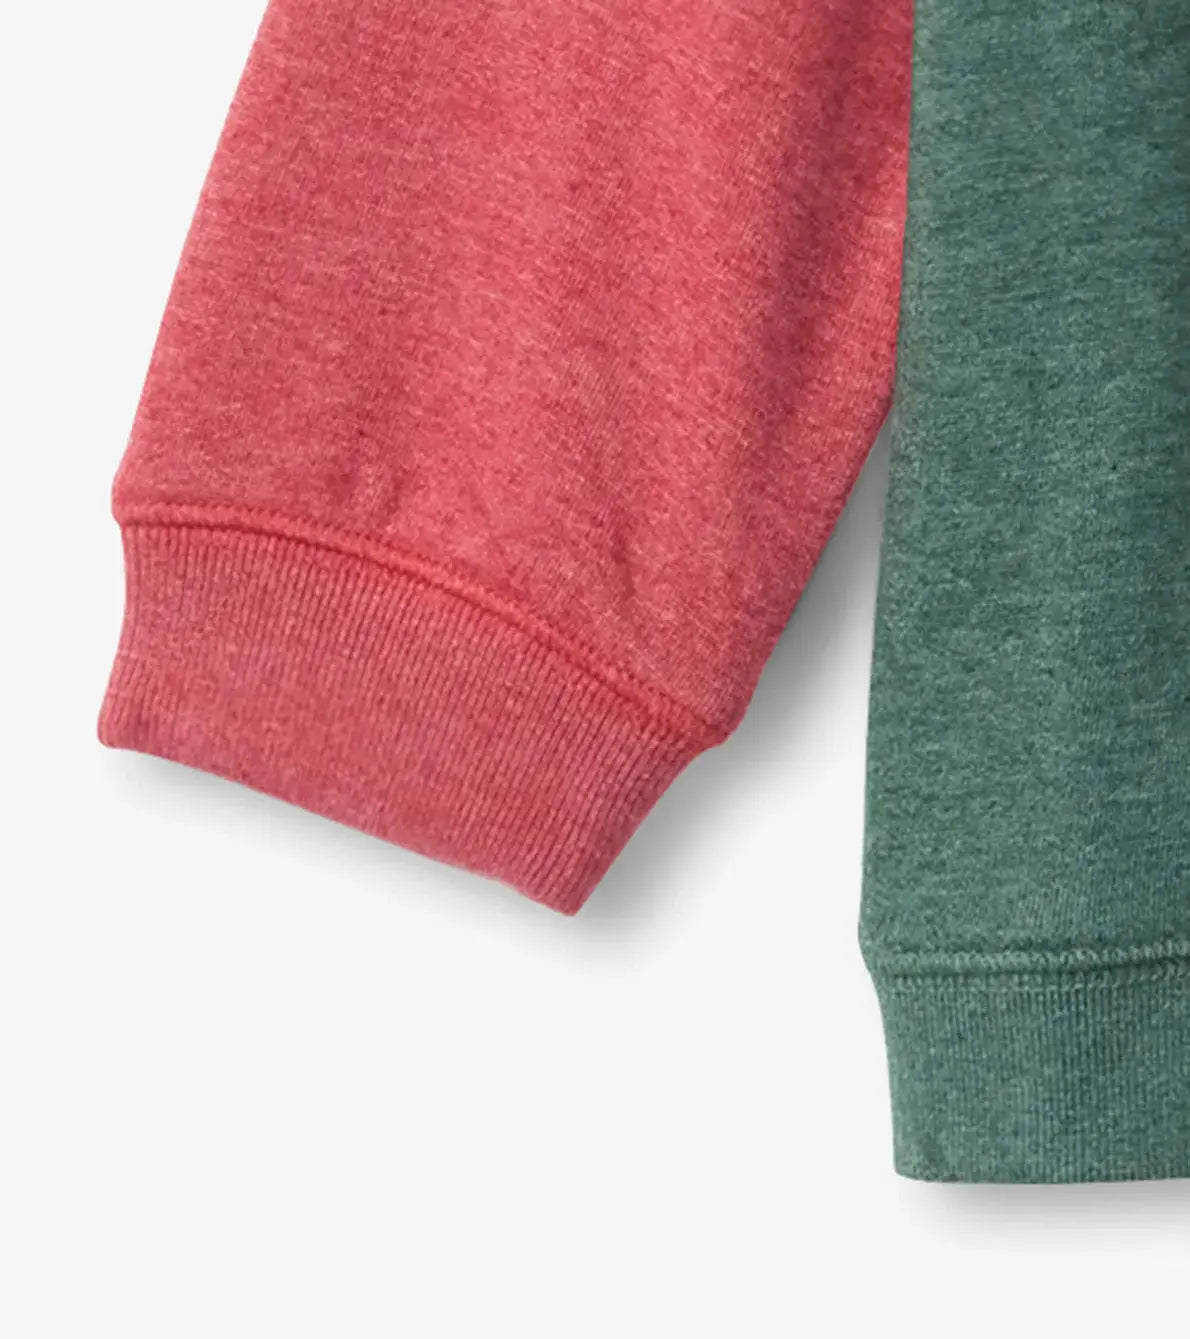 Holiday Stag Pullover Sweatshirt | Hatley | Hatley | Jenni Kidz